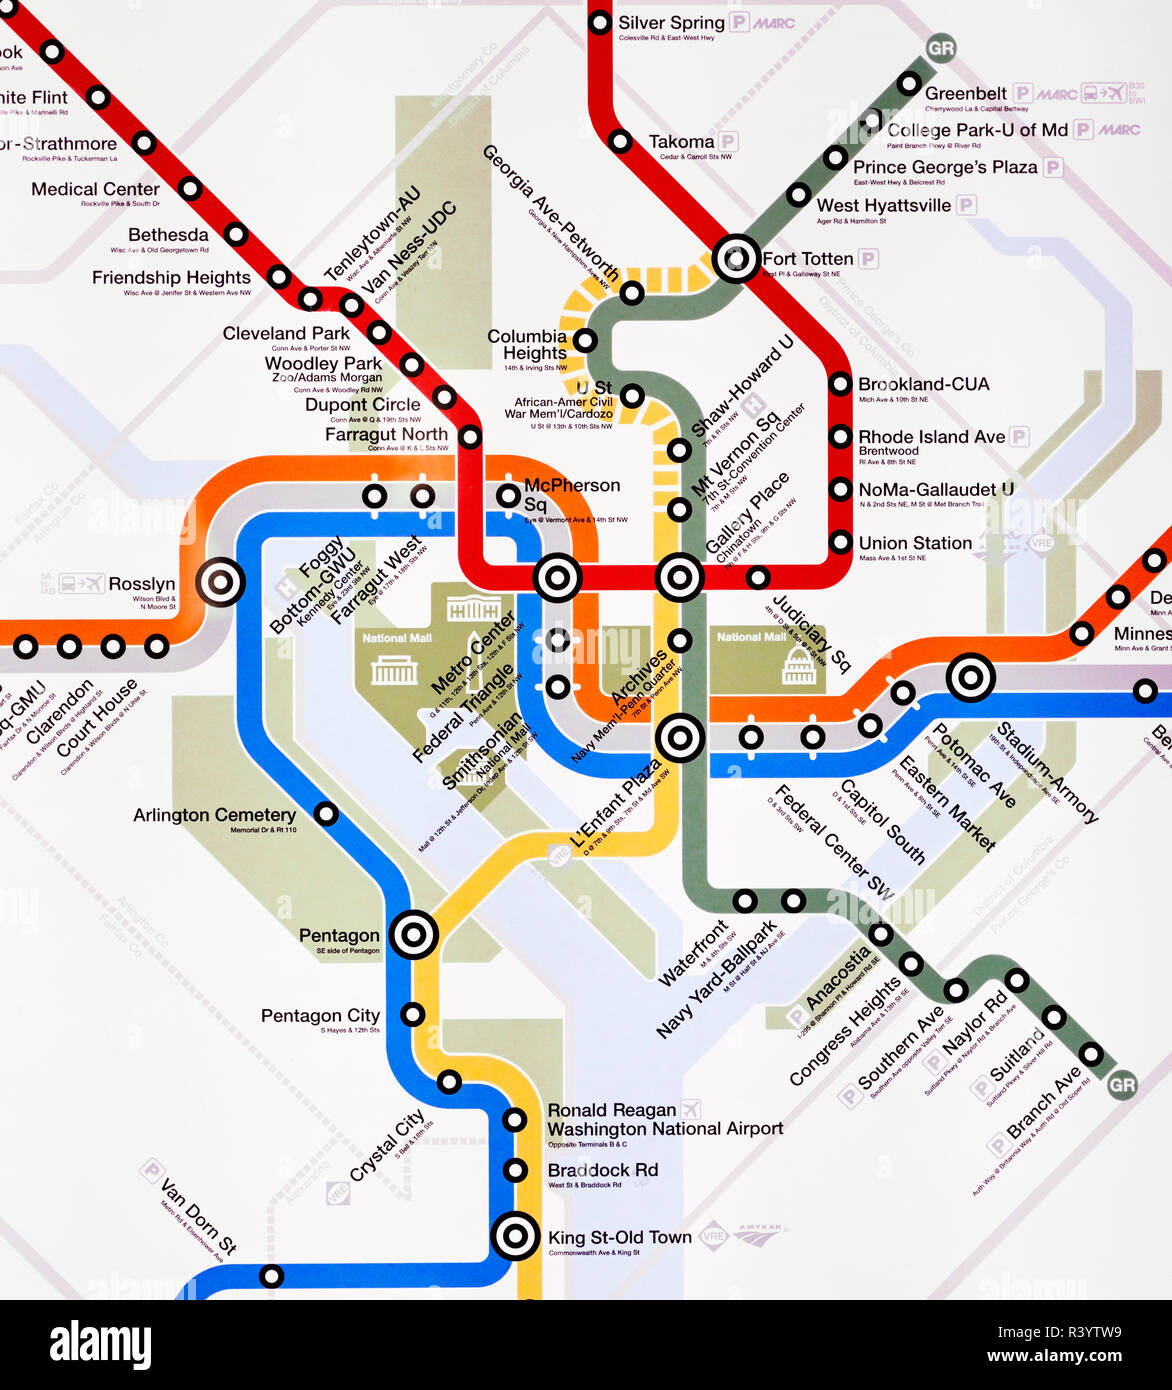 Metro mapa del metro de Washington DC. Foto de stock